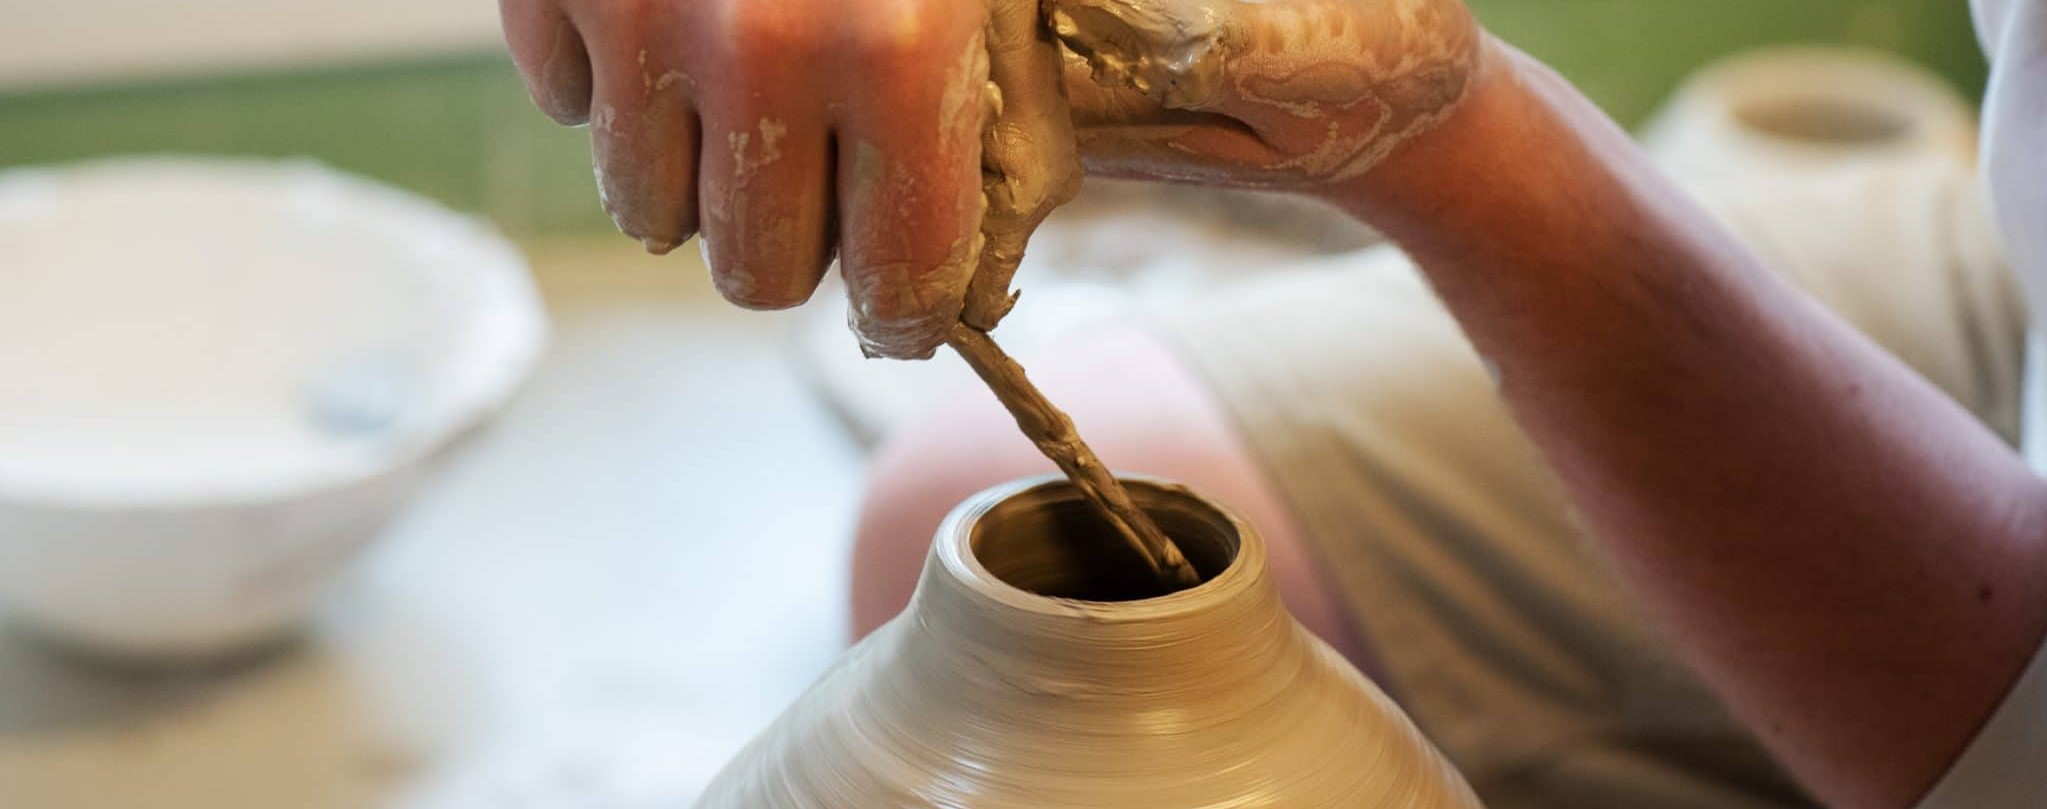 keramikk dreiekurs front